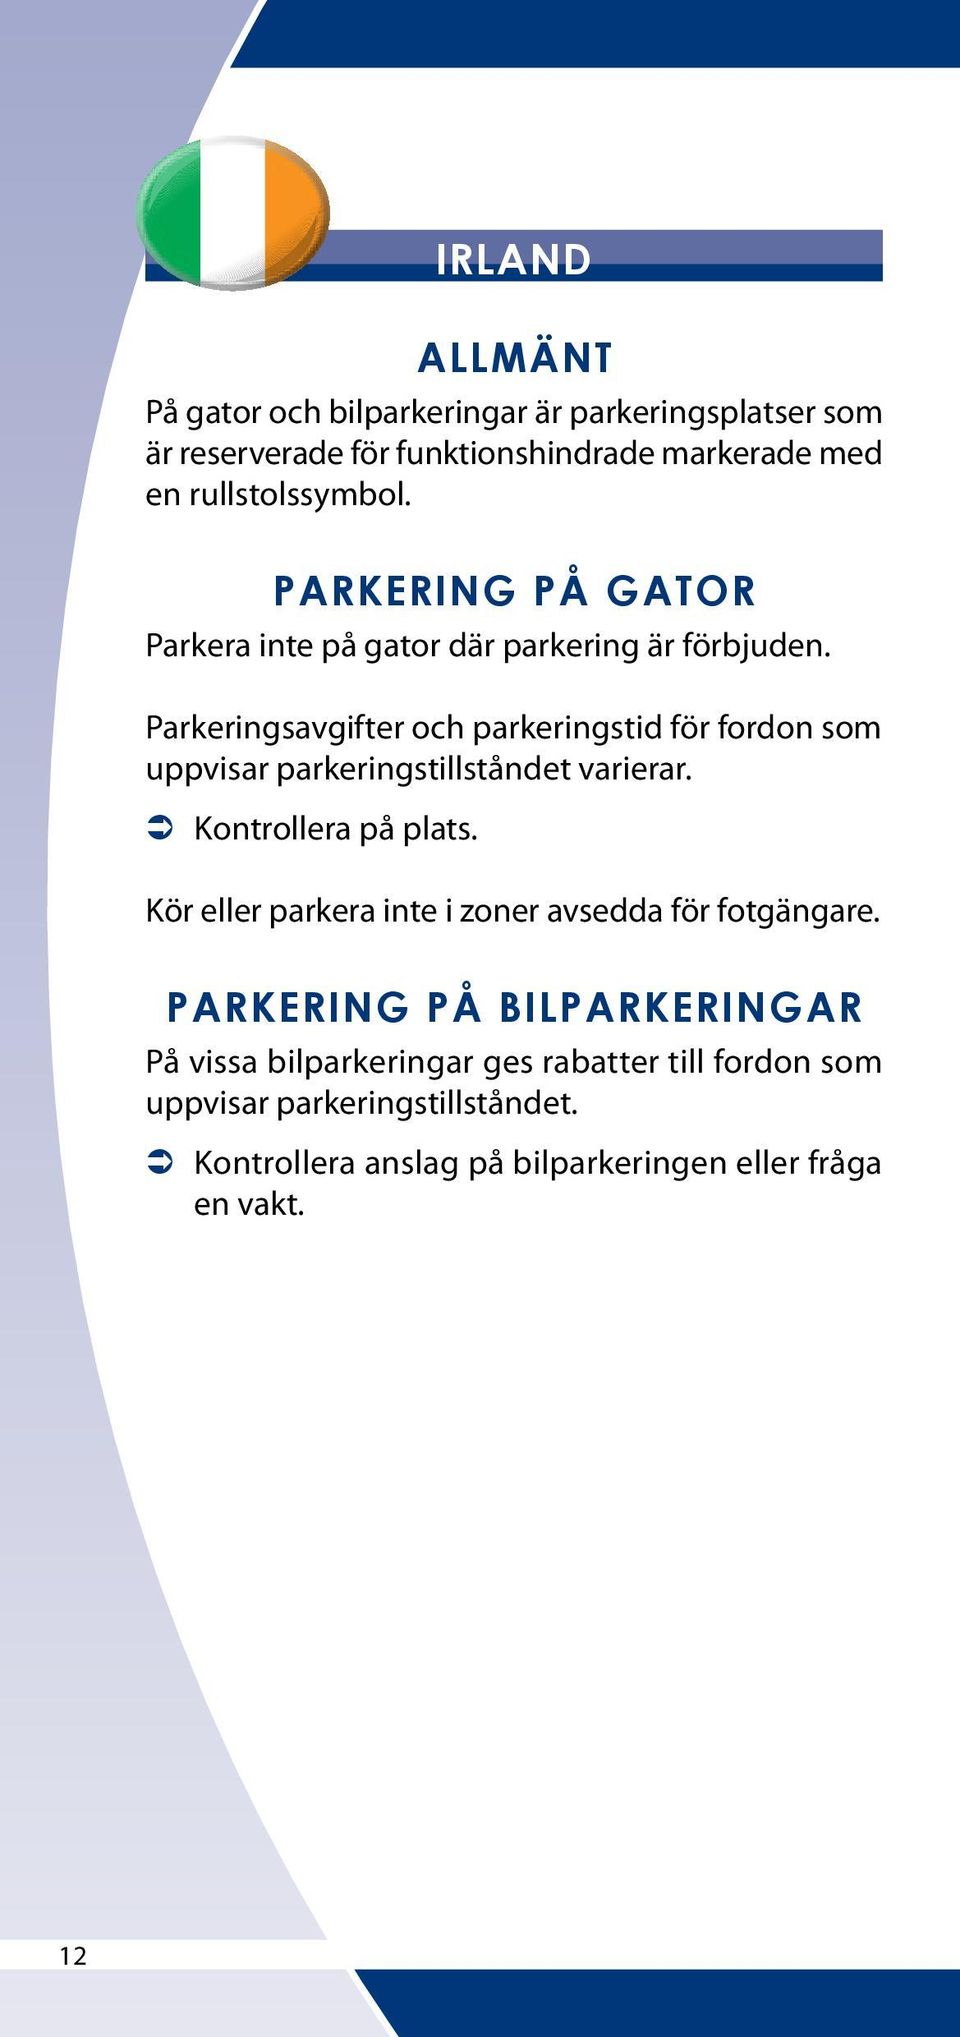 Parkeringsavgifter och parkeringstid för fordon som uppvisar parkeringstillståndet varierar.